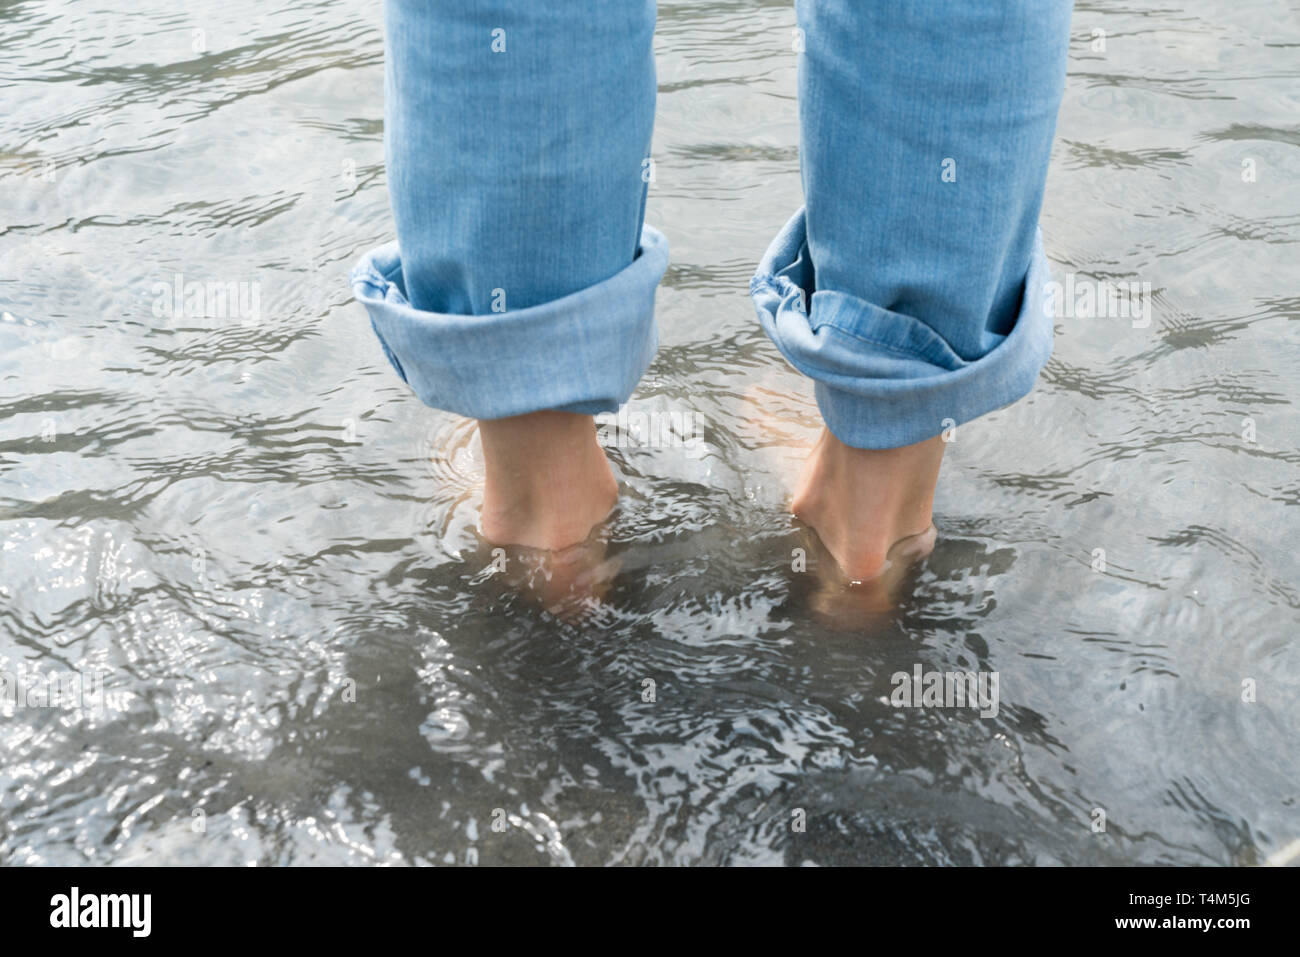 Füße der Frau trägt blaue Jeans in kaltem Wasser bei einem Kneipp-Fußbad  Stockfotografie - Alamy